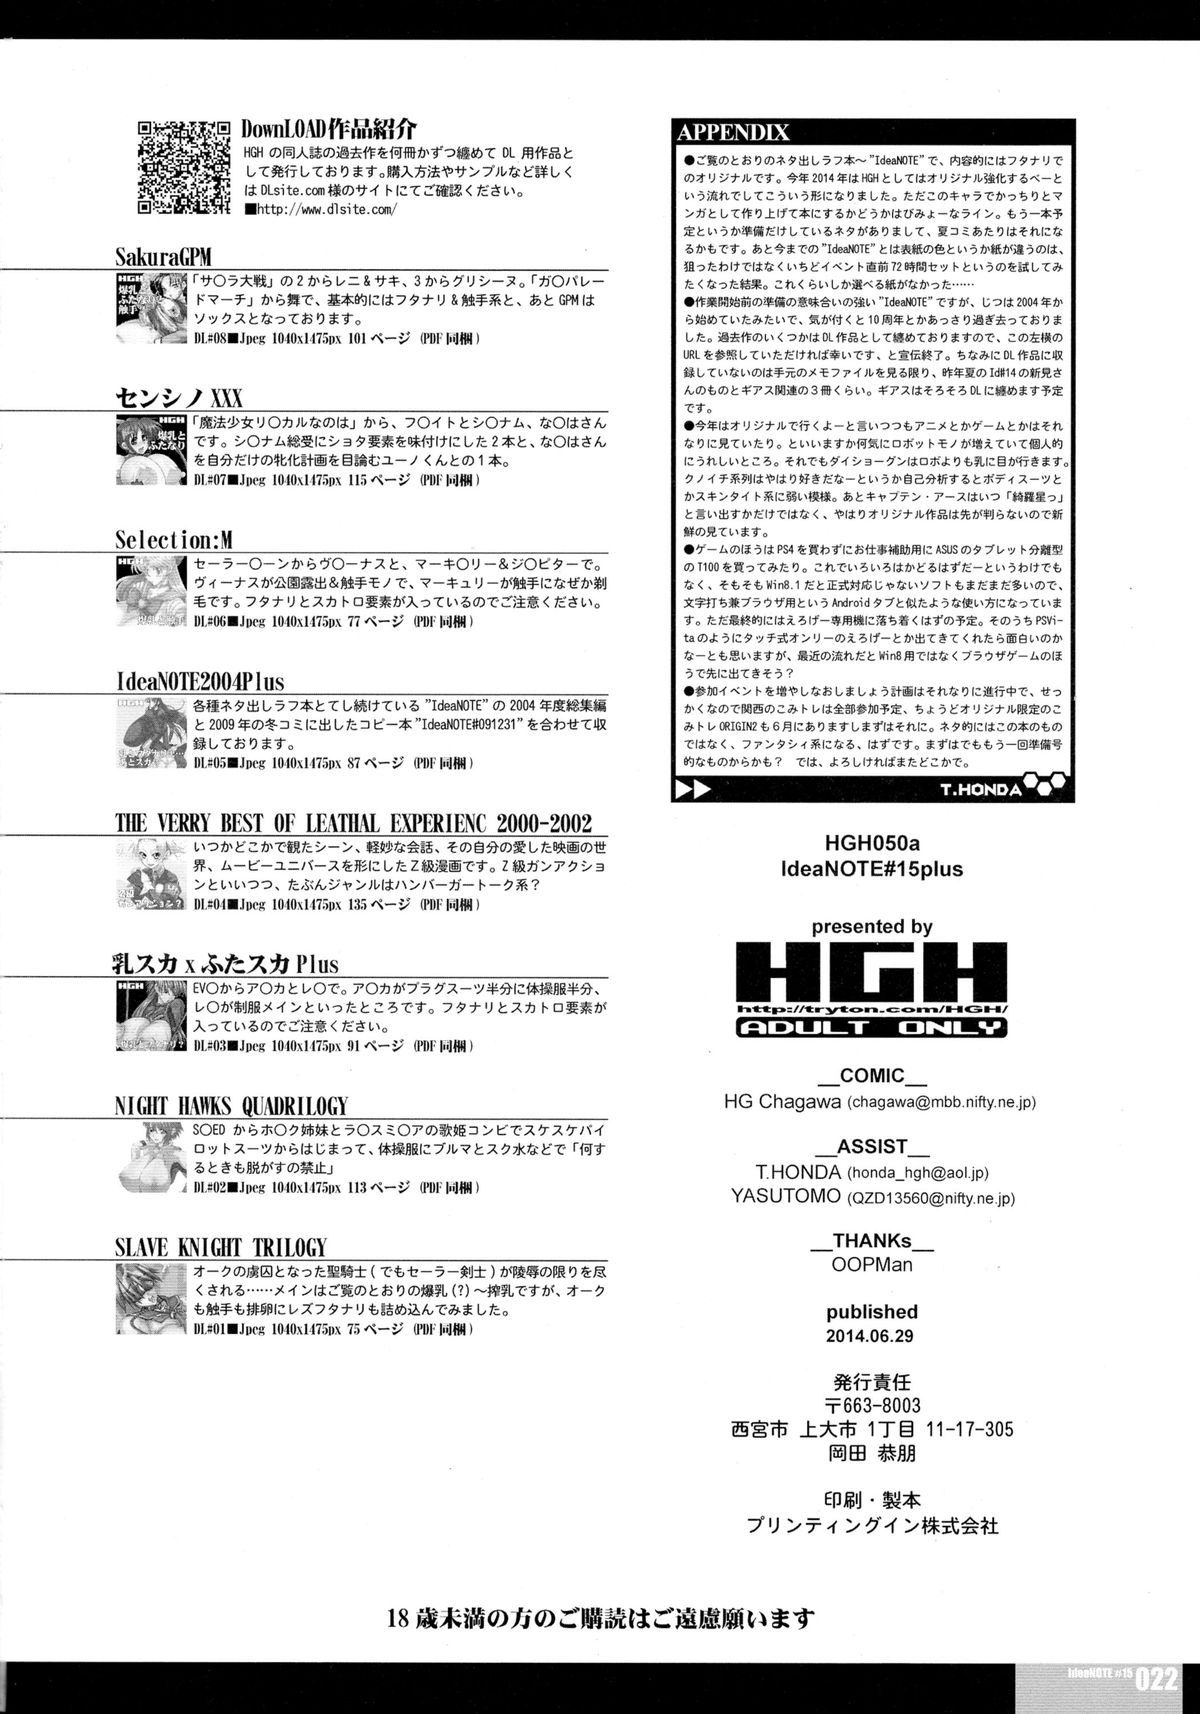 (こみトレ ORIGIN 03) [HGH (HG茶川)] ideaNOTE#15plus